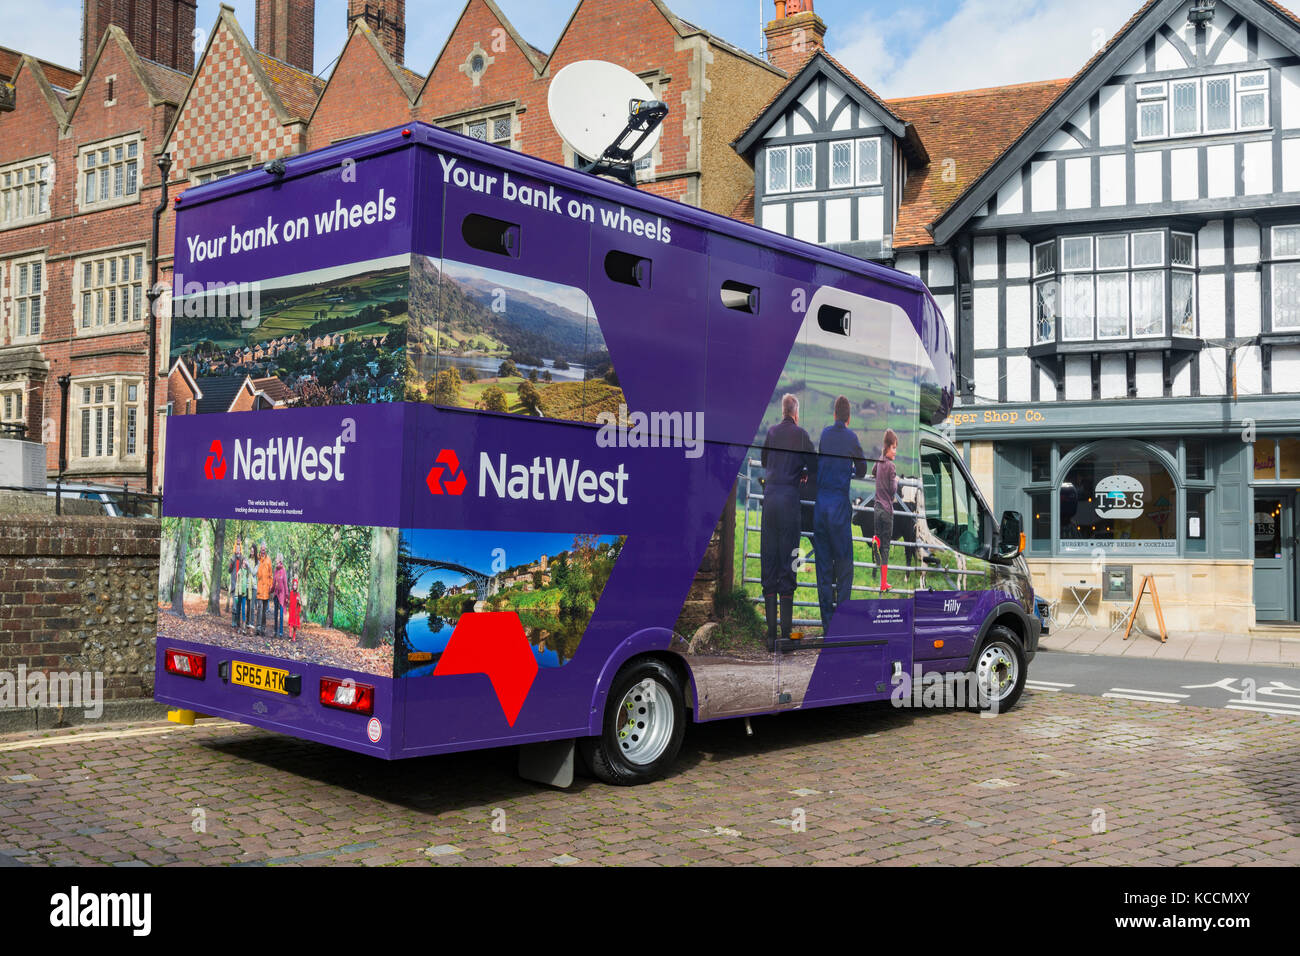 NetWest Bank auf Rädern van für mobile Banking in Arundel, West Sussex, England, UK. Stockfoto